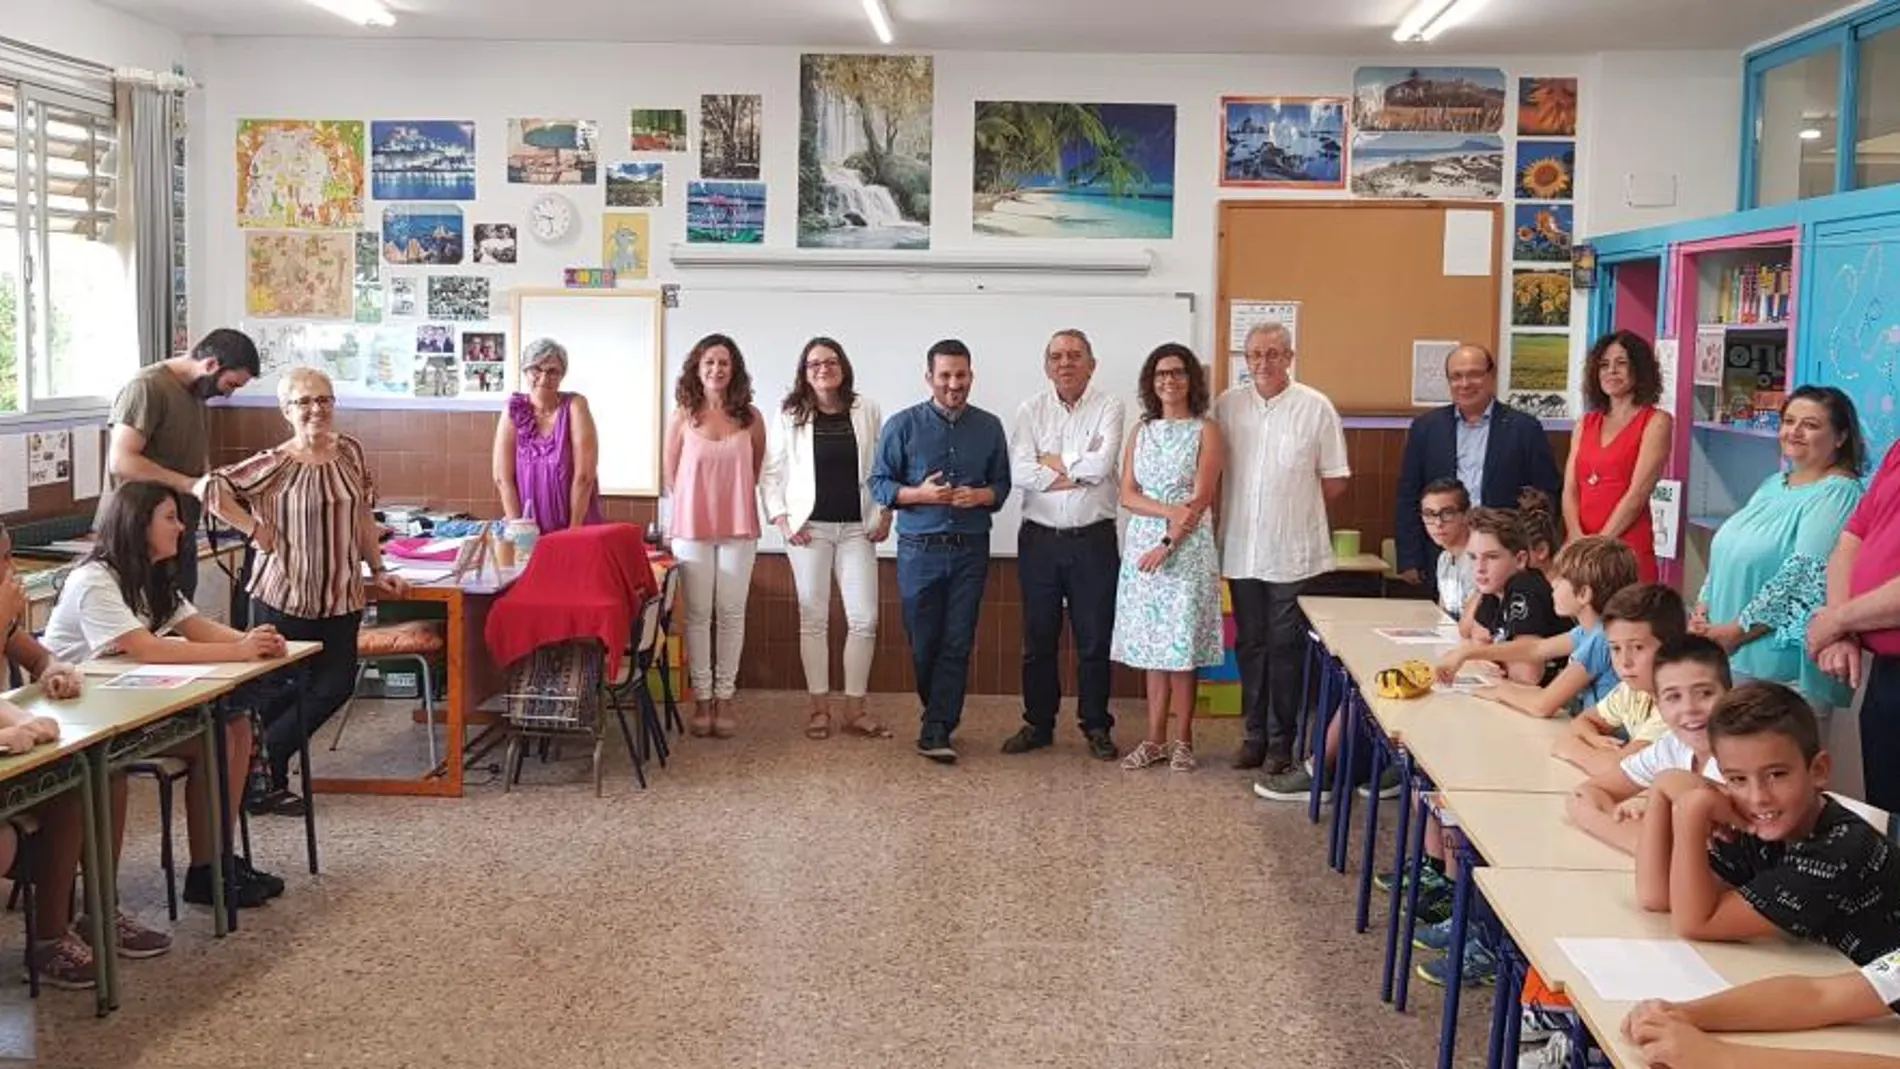 Oltra acompañó a Marzà a la inauguración del curso escolar y visitaron el CEIP Jaume I de Paiporta. El presidente Puig asistió el viernes al inicio de las clases en un centro de Alicante